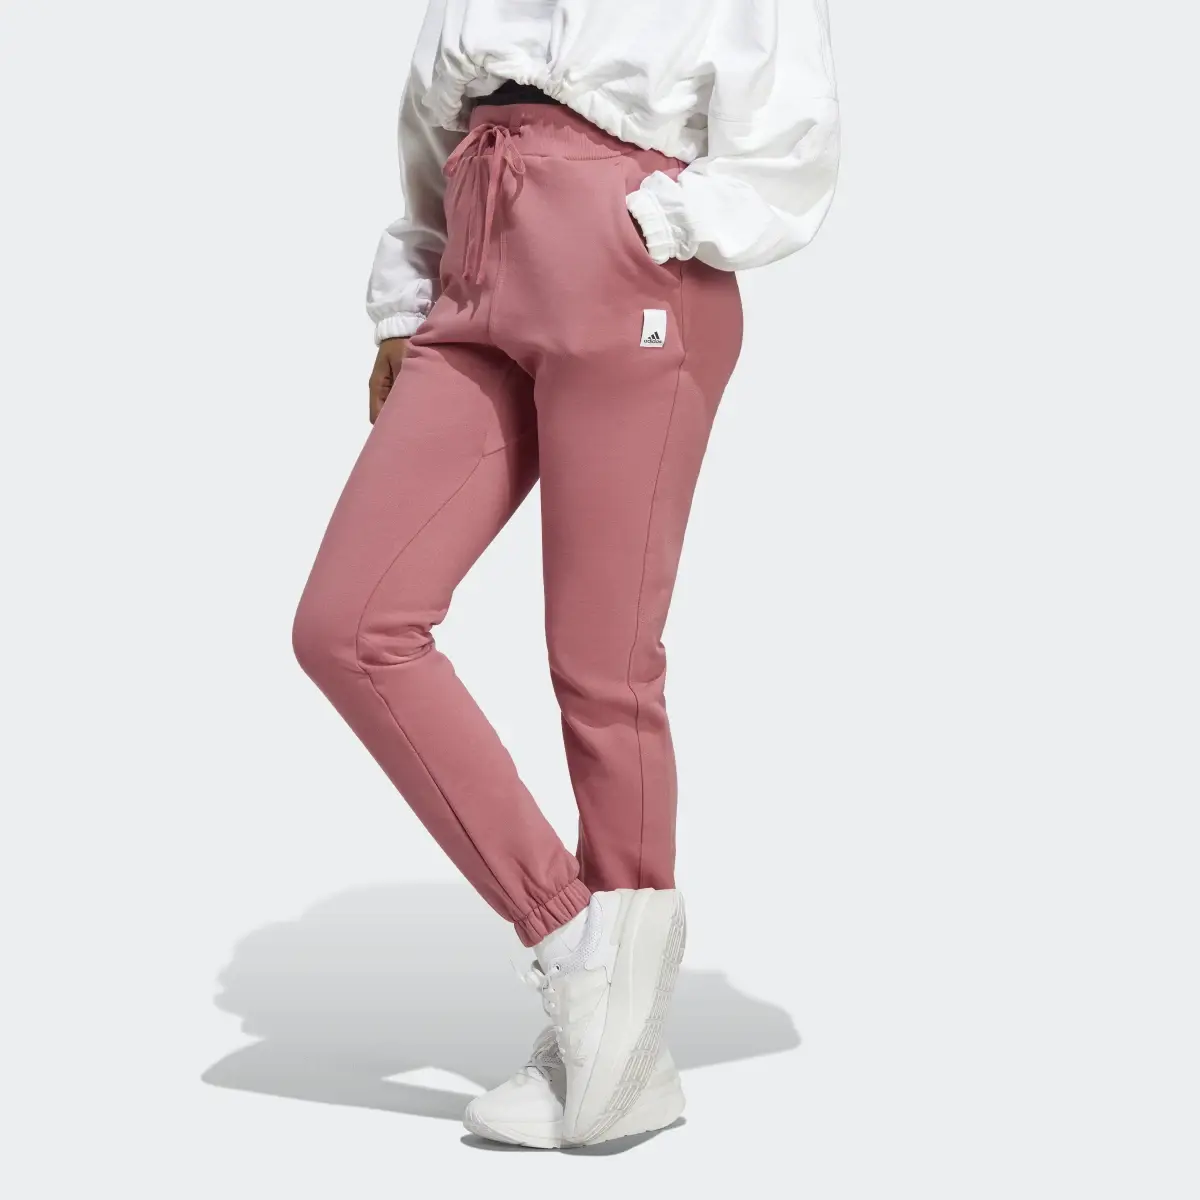 Adidas Lounge Fleece Pants. 1